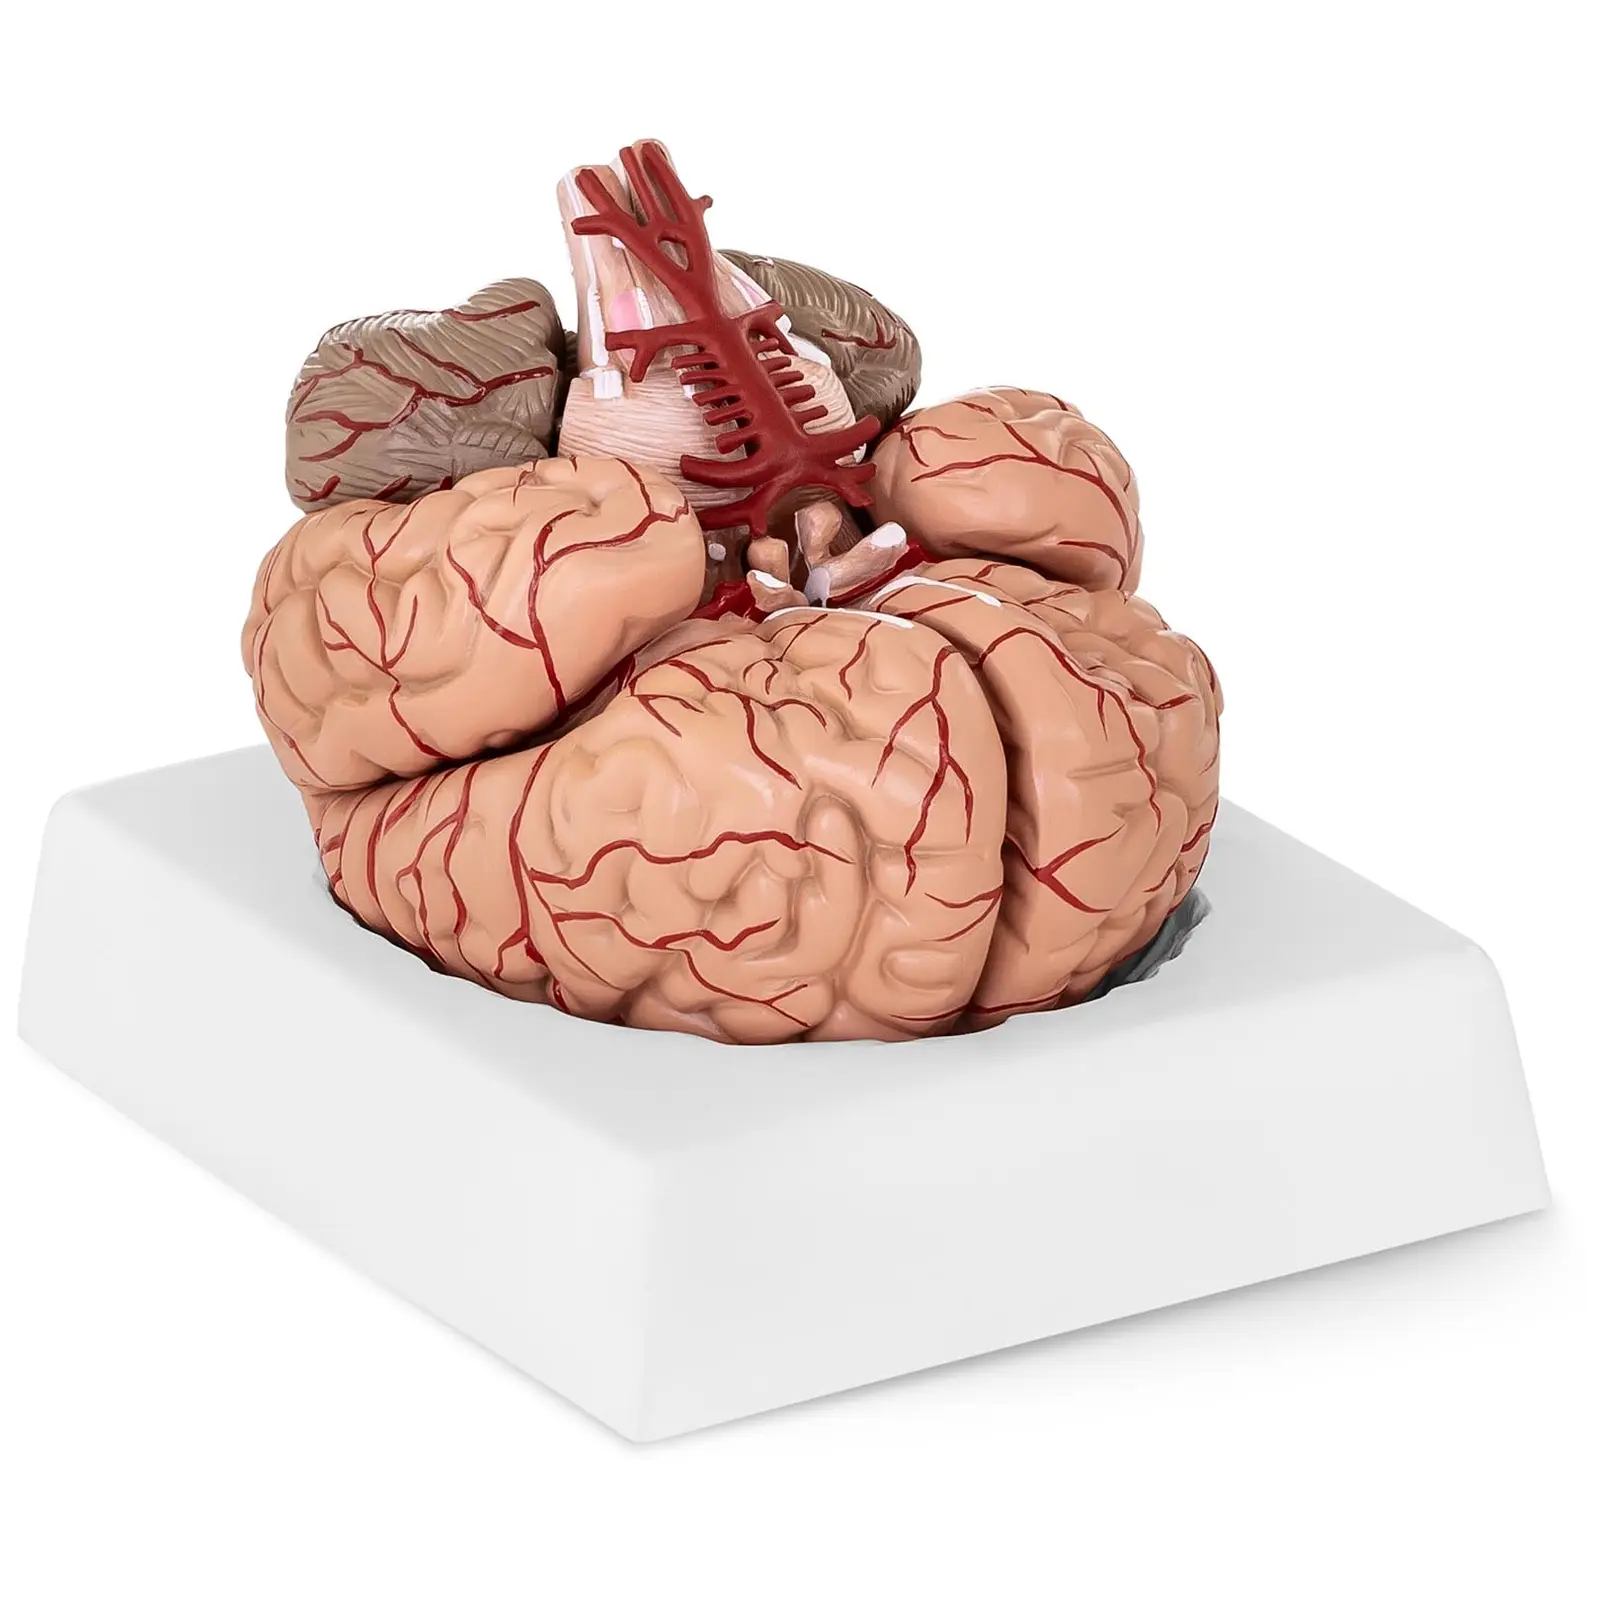 Anatominen malli - aivot - 9 segmenttiä - luonnollisessa koossa